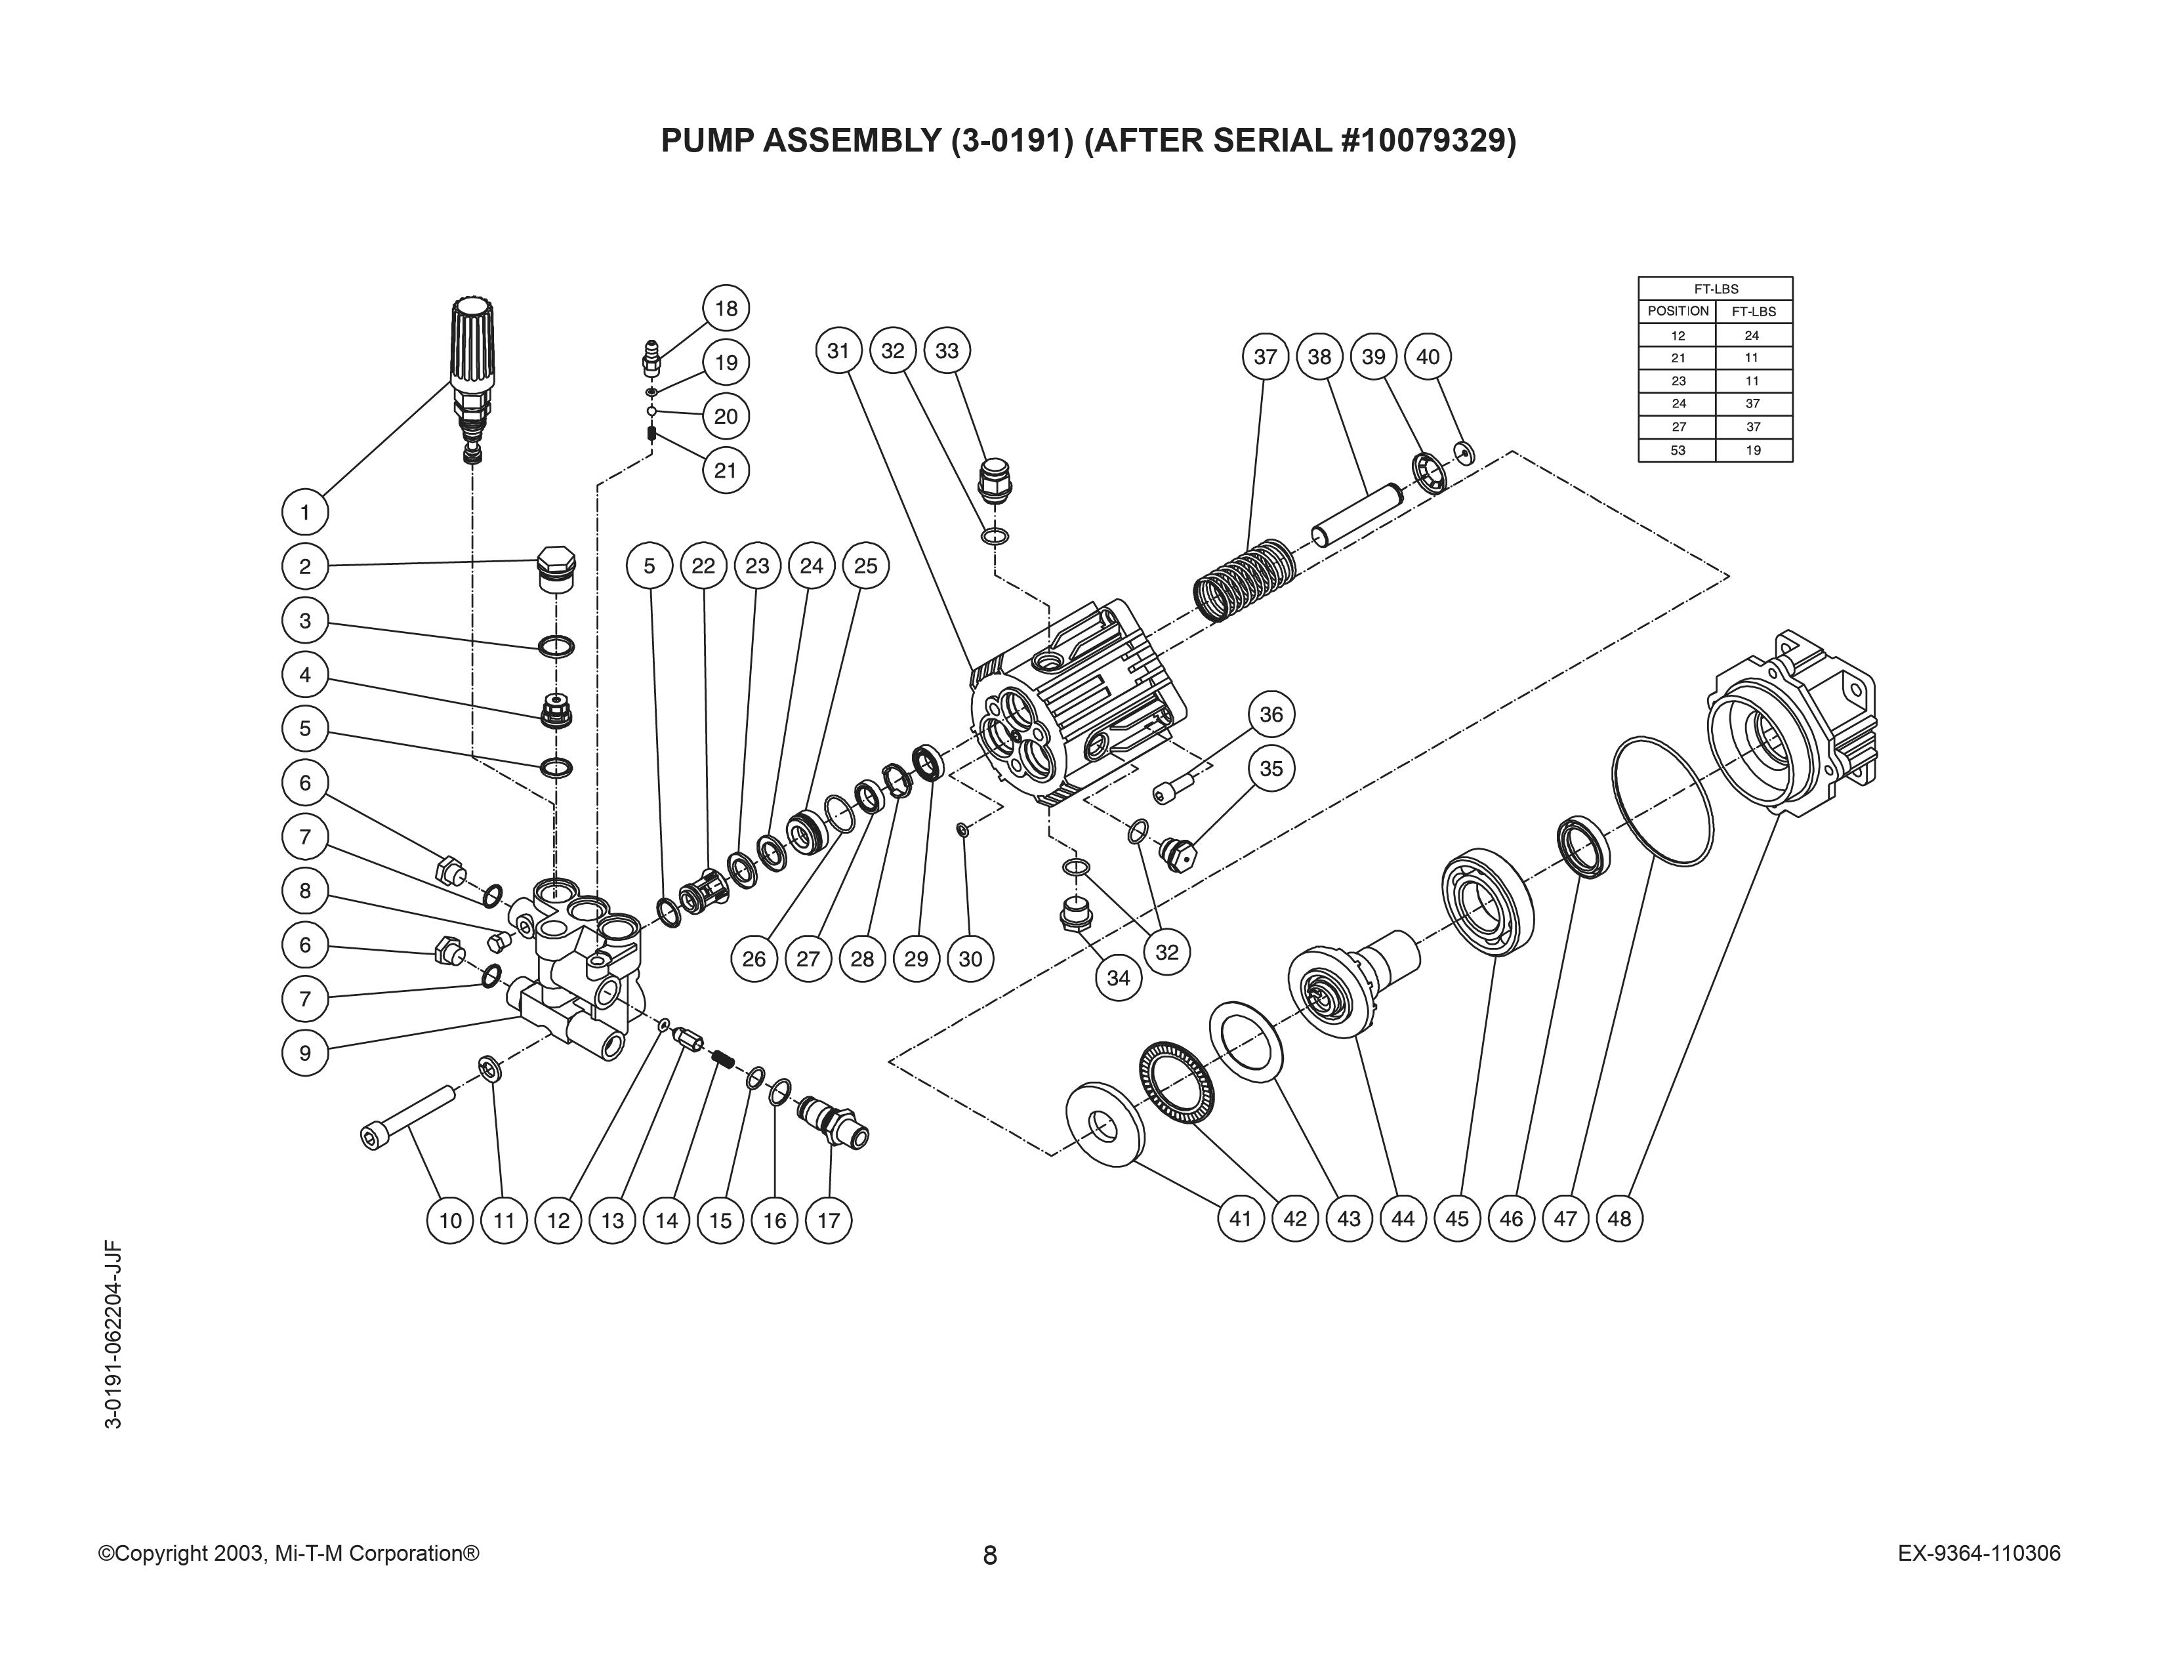 WP-2703-3MRIB Parts, pump, repair kit, breakdown & owners manual.